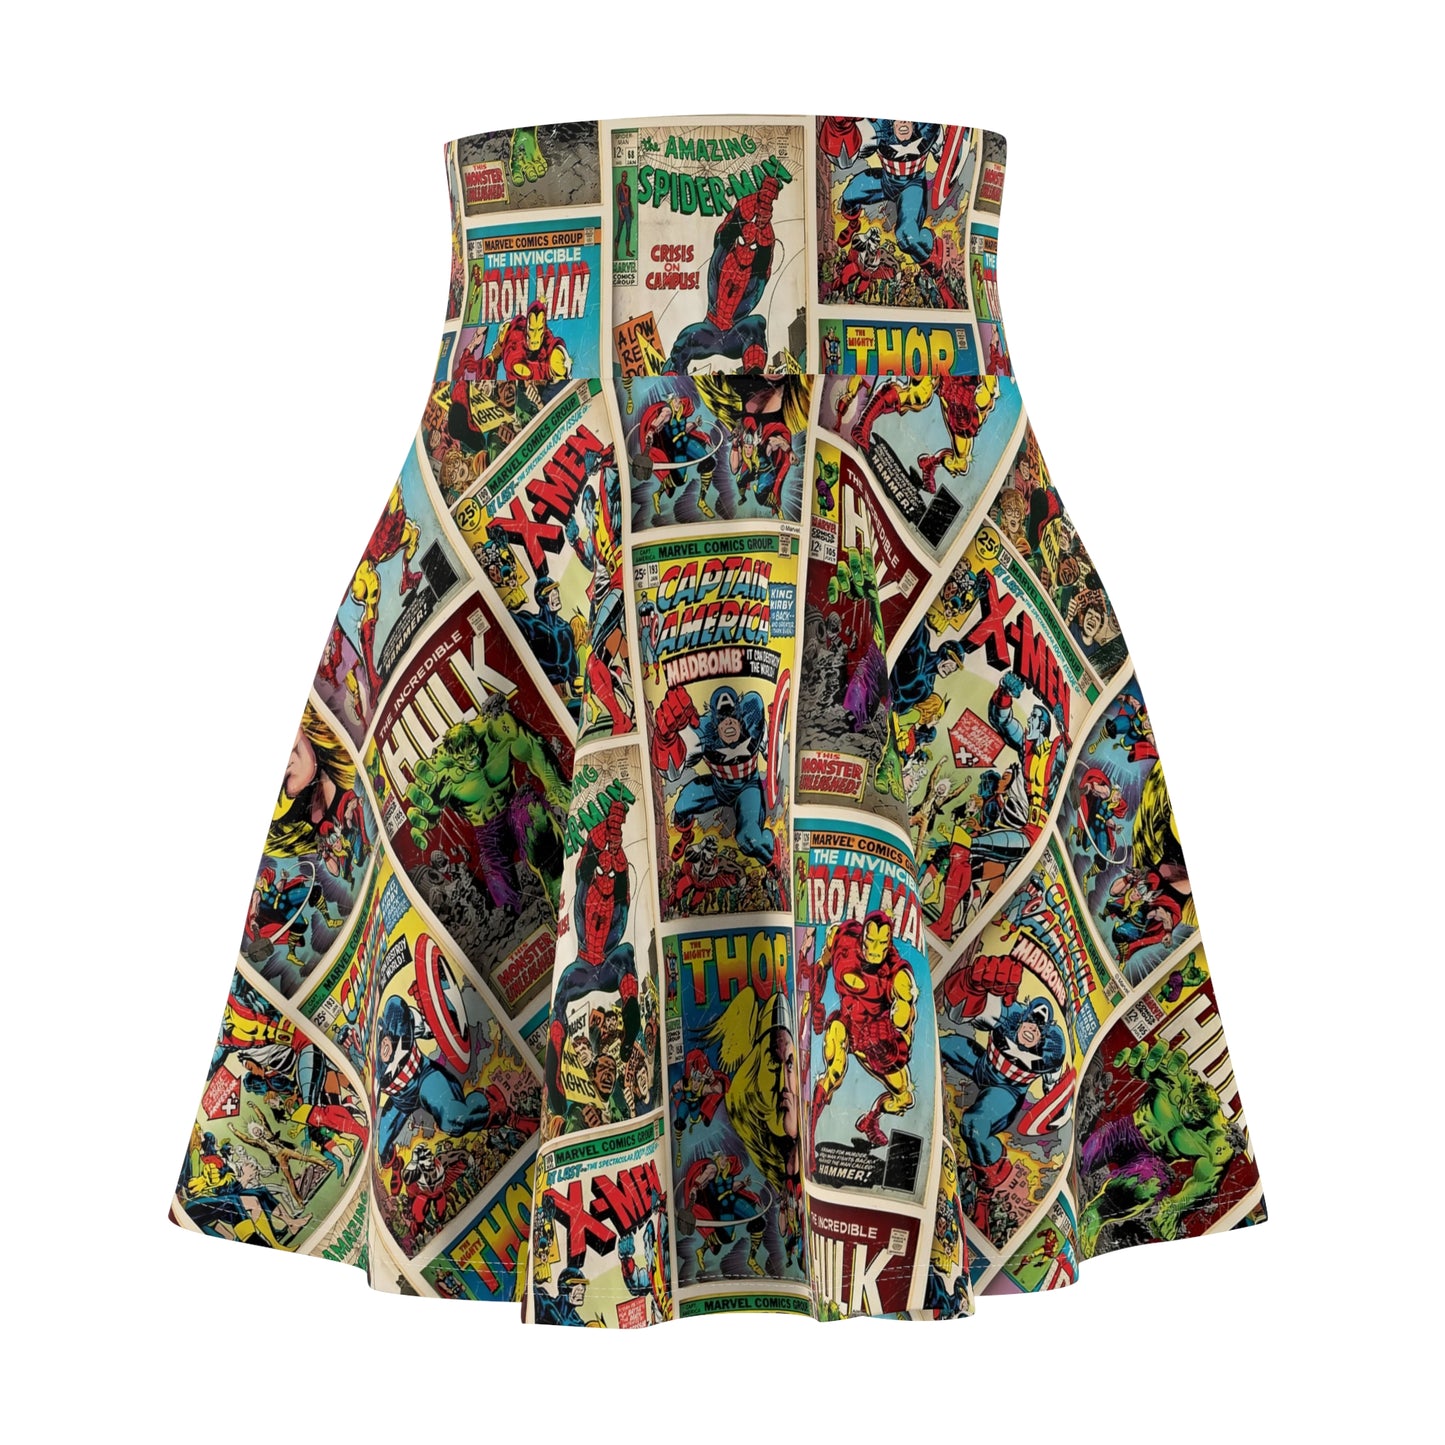 Marvel Comic Book Cover Collage Women's Skater Skirt